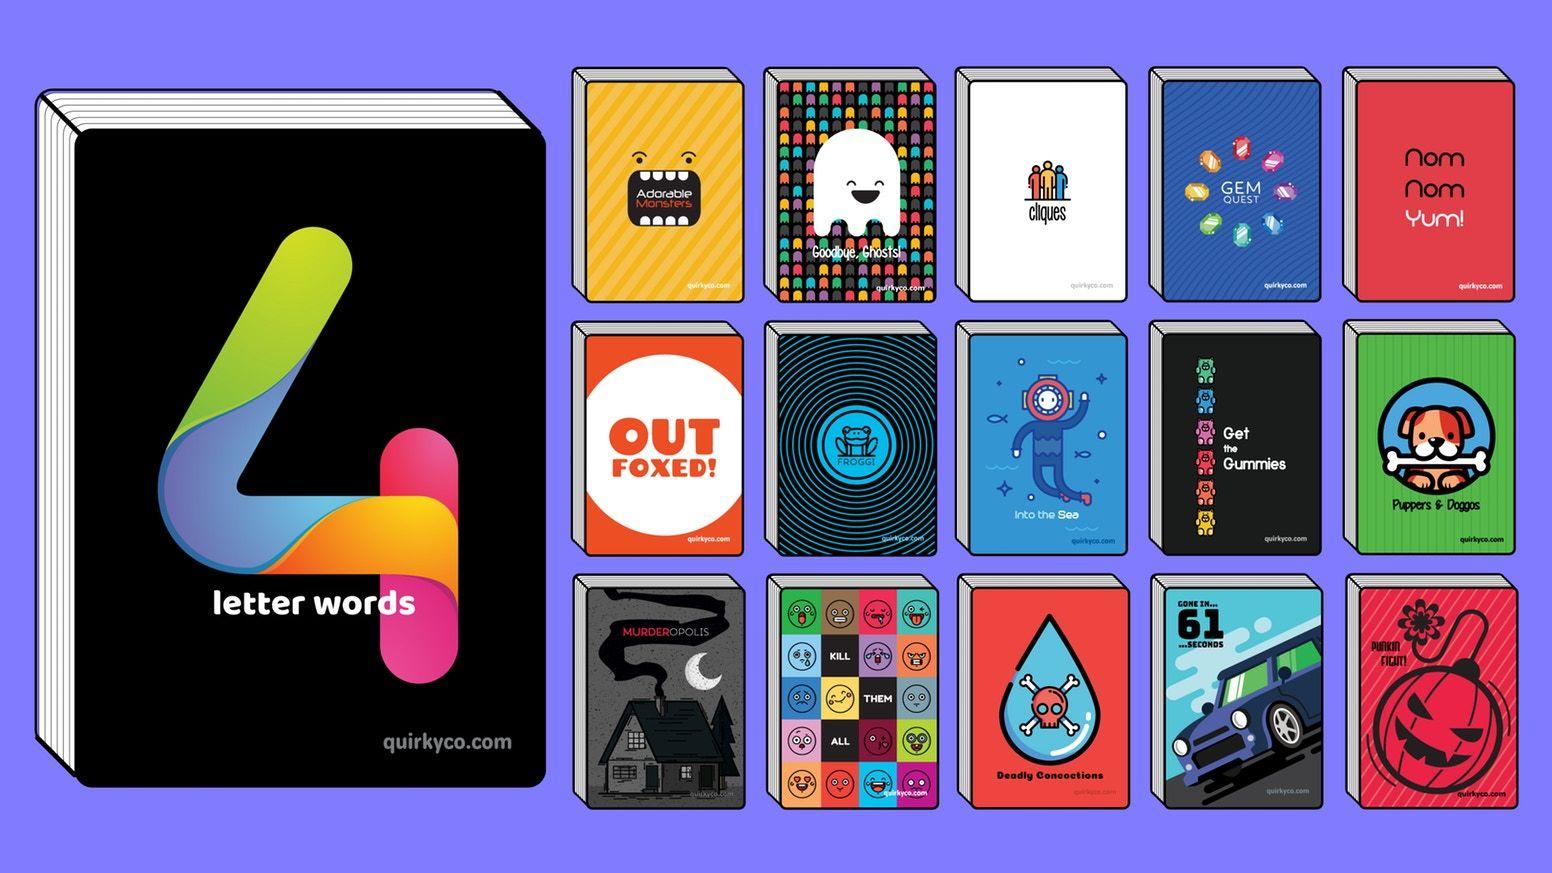 Four Letter S Logo - 4 Letter Words (+15 More Games) by Joshua Mason — Kickstarter